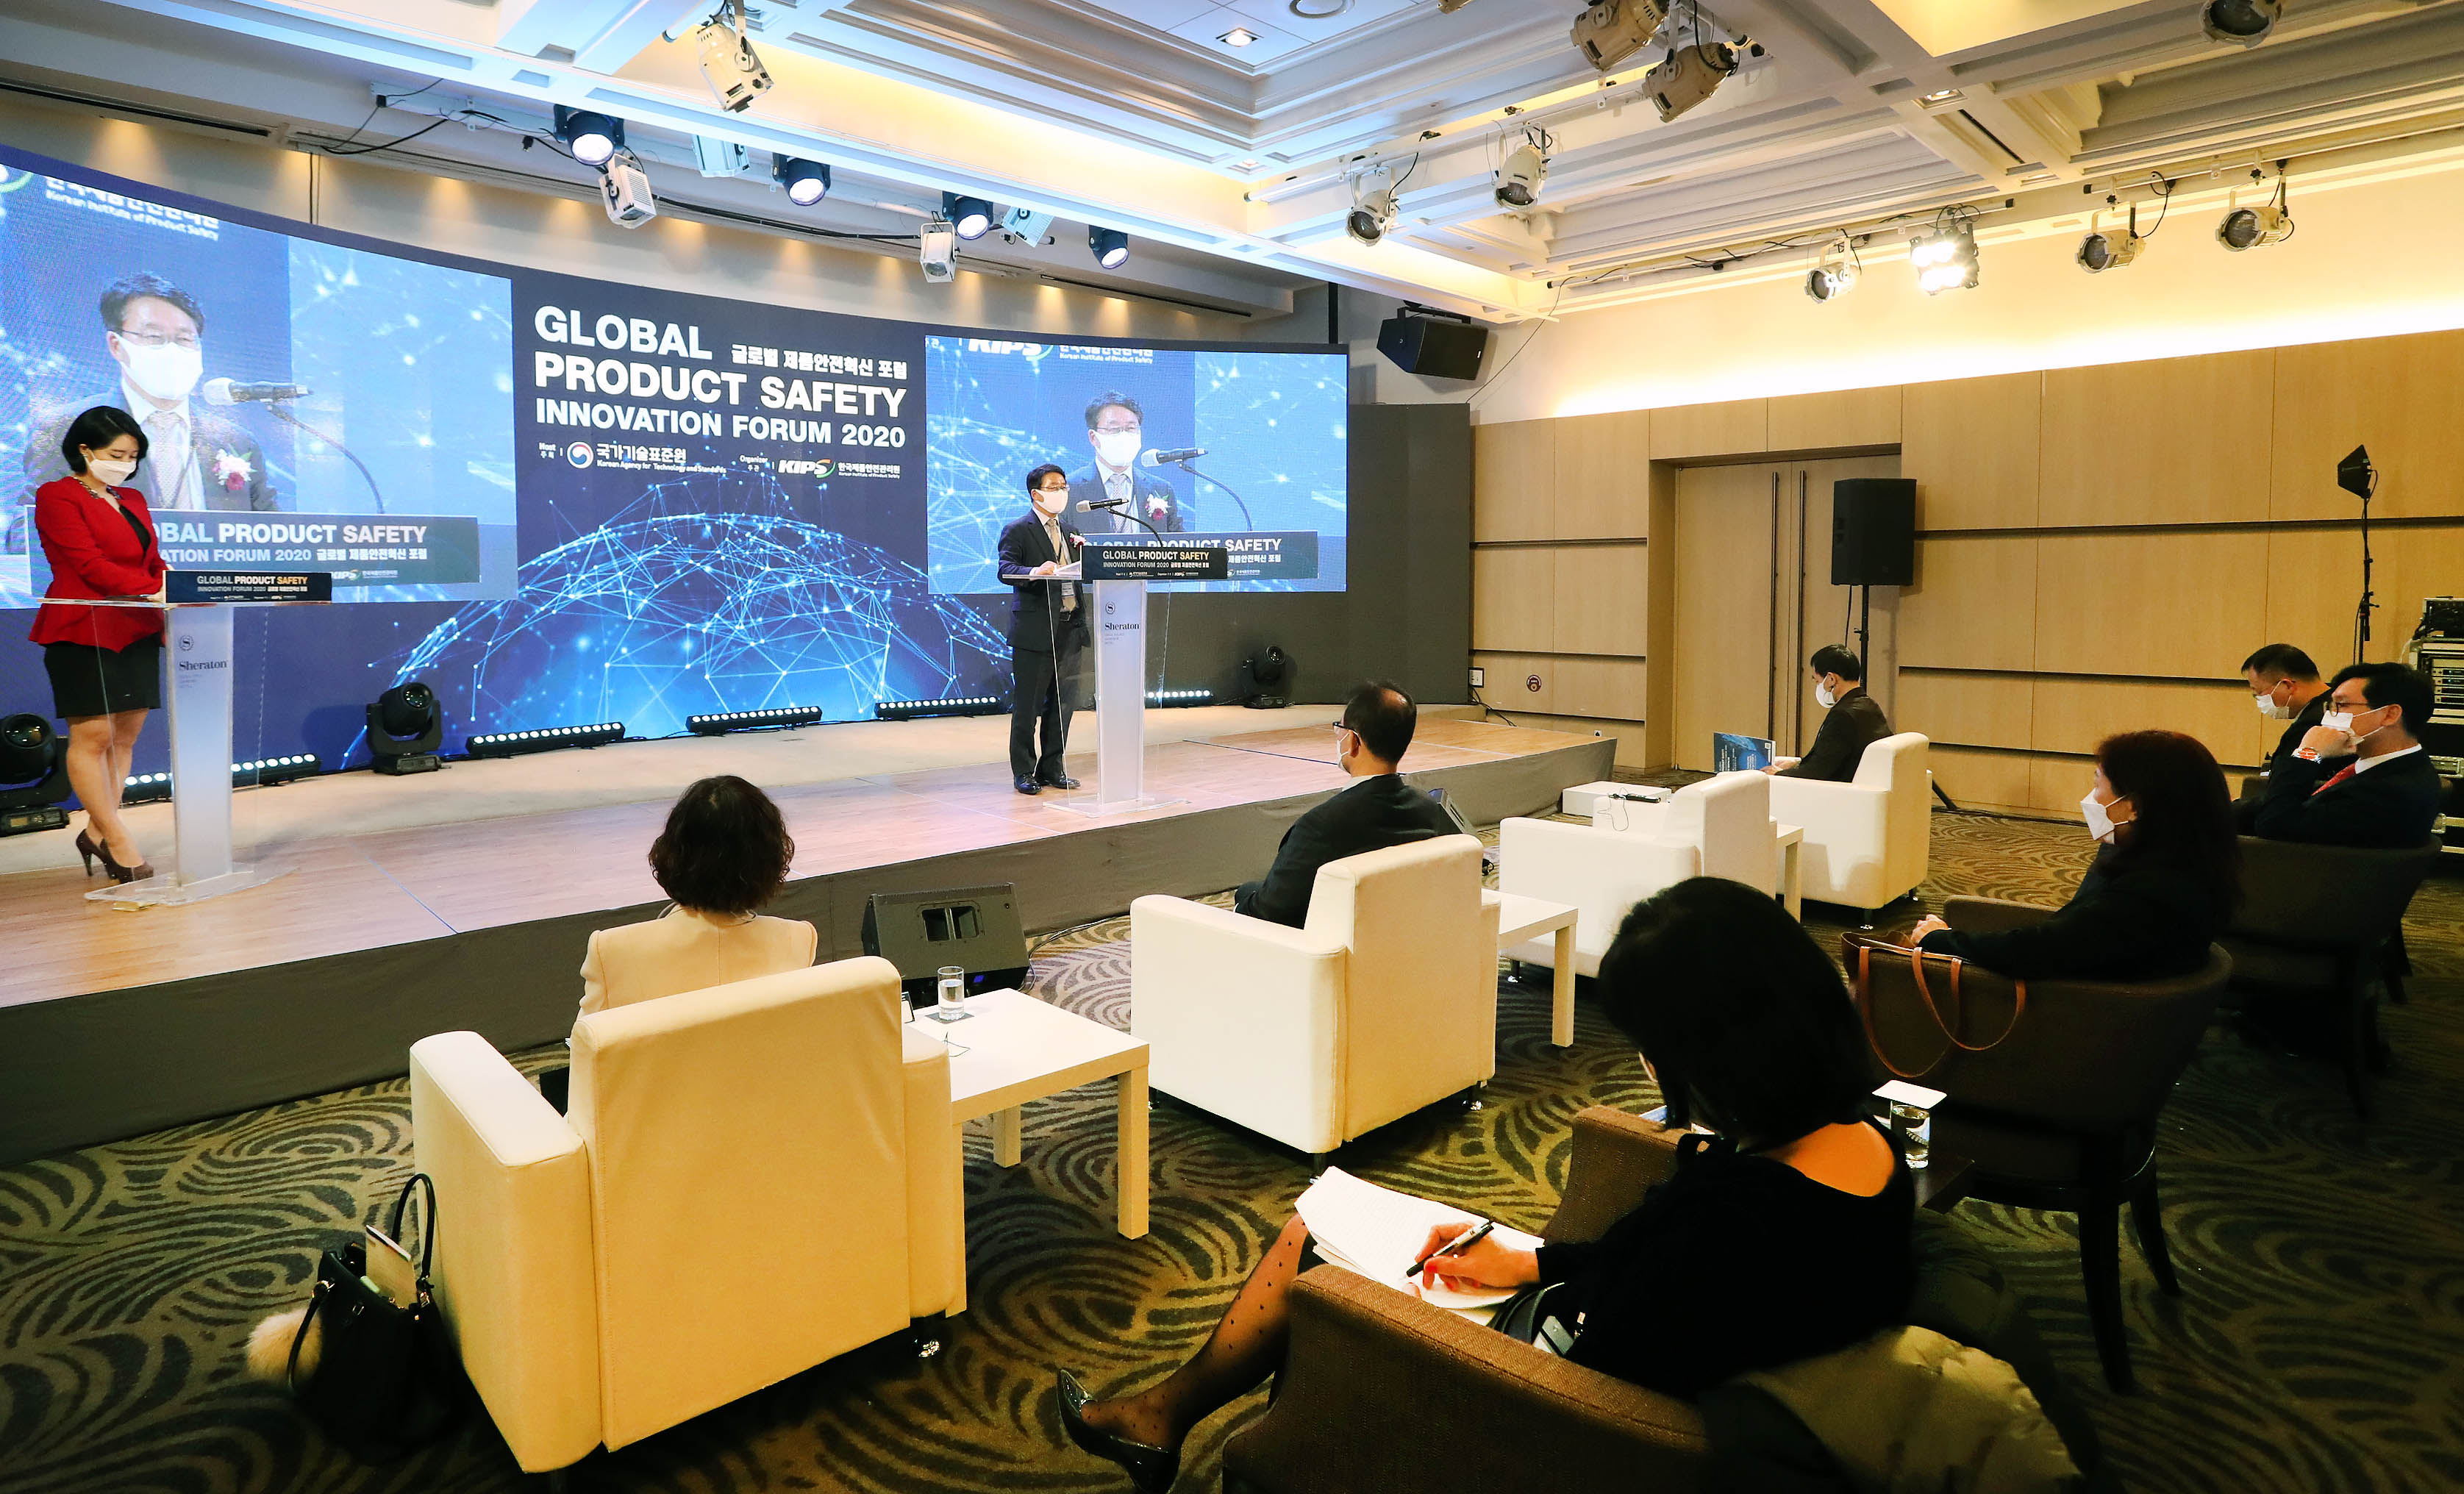 2020 글로벌 제품안전 혁신포럼 개최